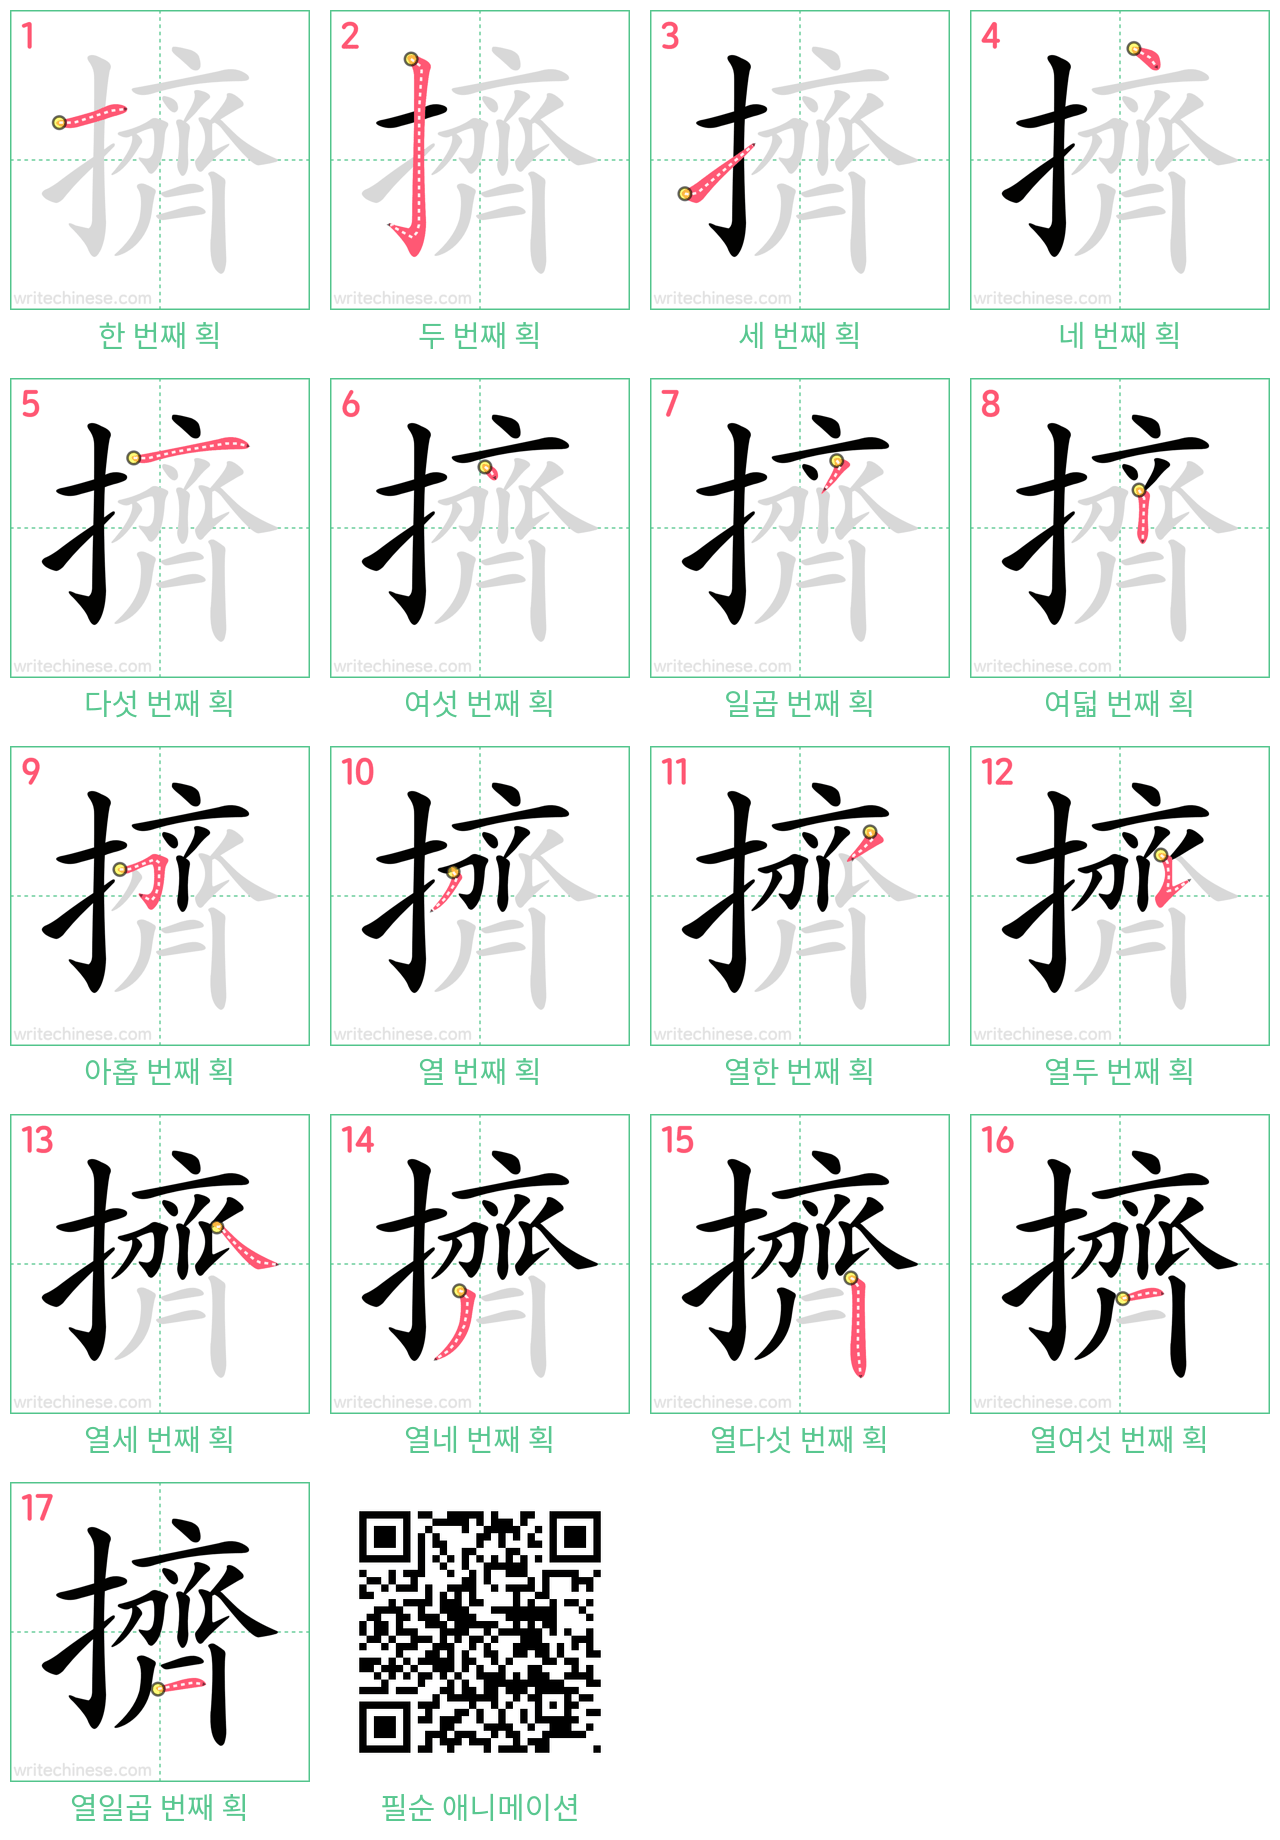 擠 step-by-step stroke order diagrams